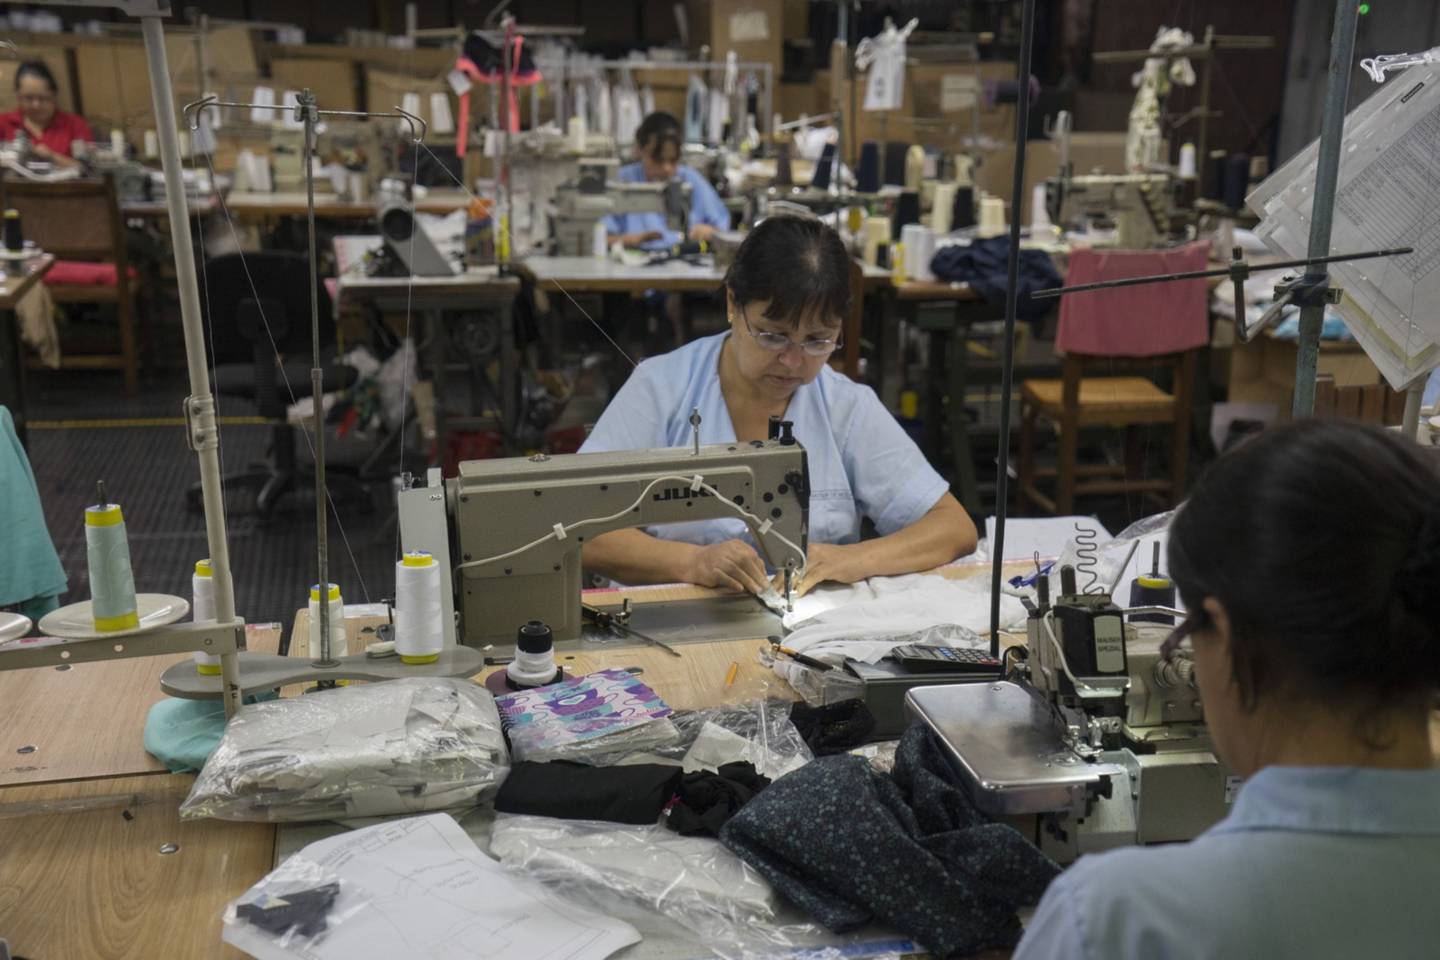 Los trabajadores operan máquinas de coser en una fábrica en Medellín, Colombia, el lunes 25 de agosto de 2014.